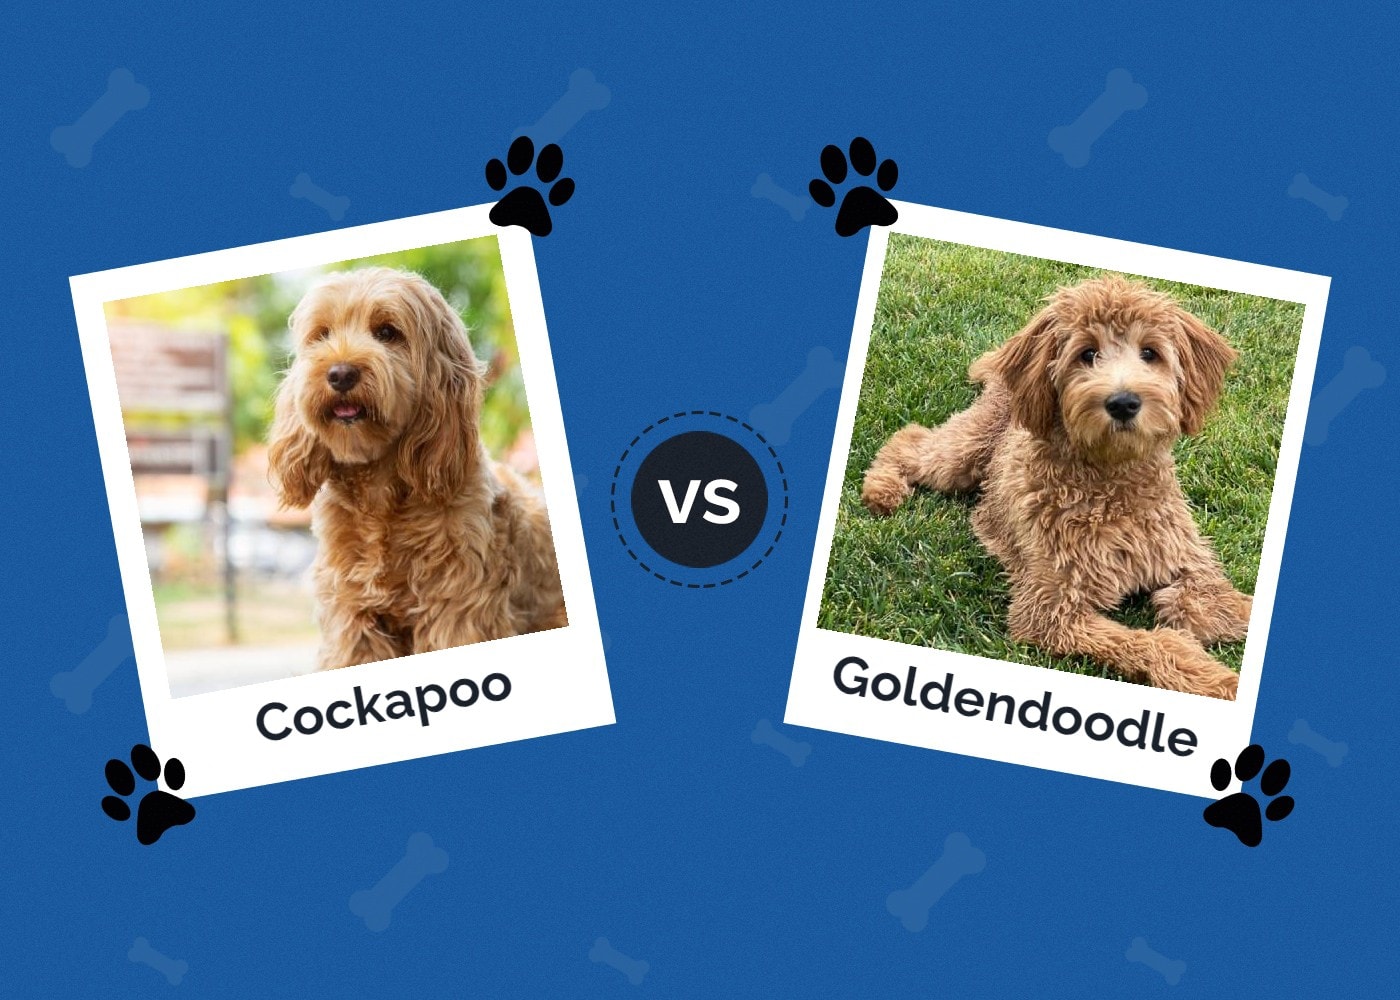 Cockapoo vs Goldendoodle